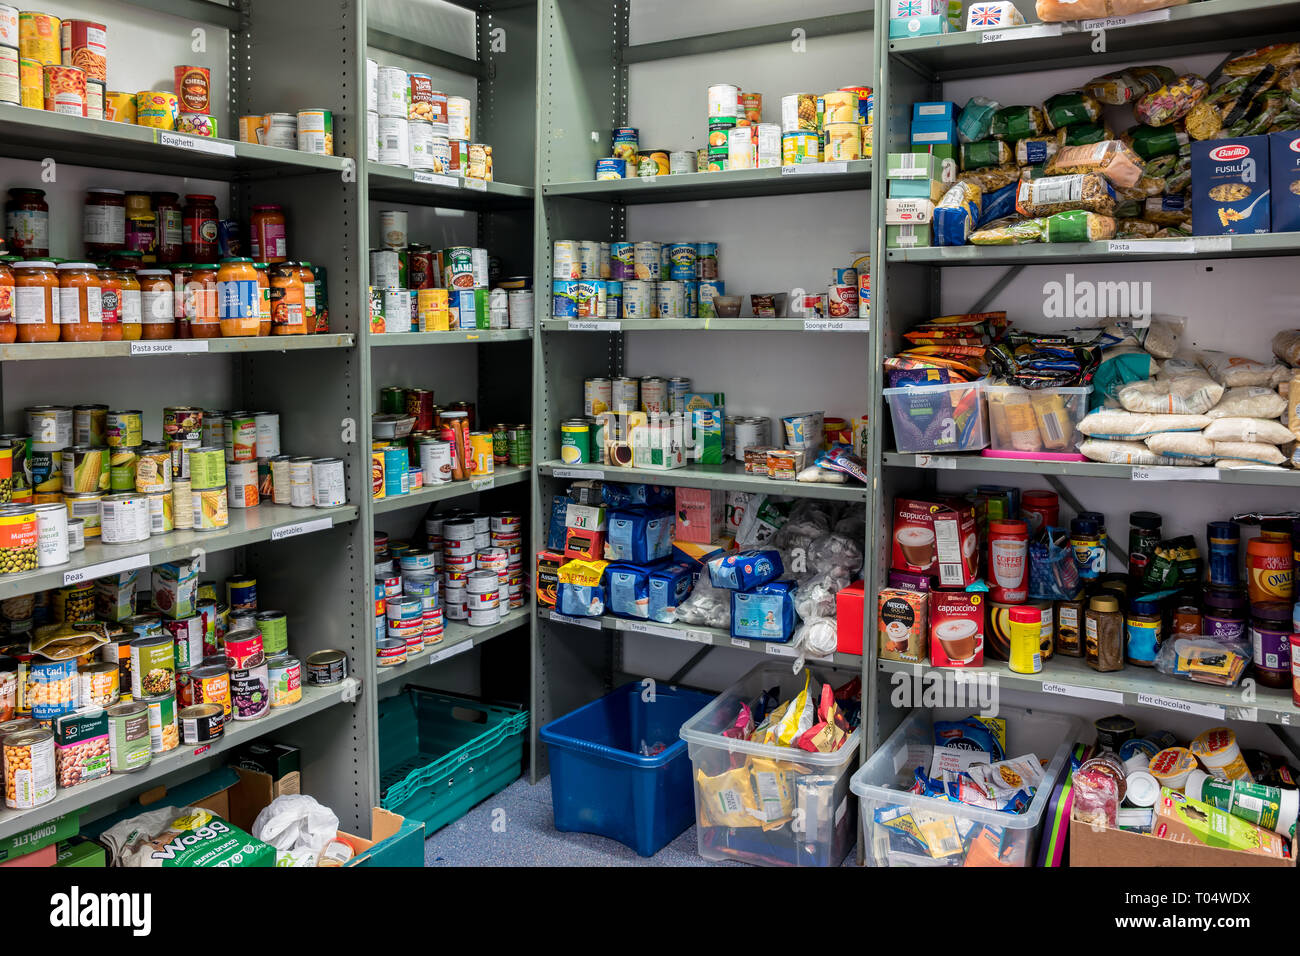 Los estantes de almacenamiento en una iglesia local de confianza Trussell  almacén del banco de alimentos que muestran una variedad de latas y  despensa essentials listo para paquetes de alimentos Fotografía de